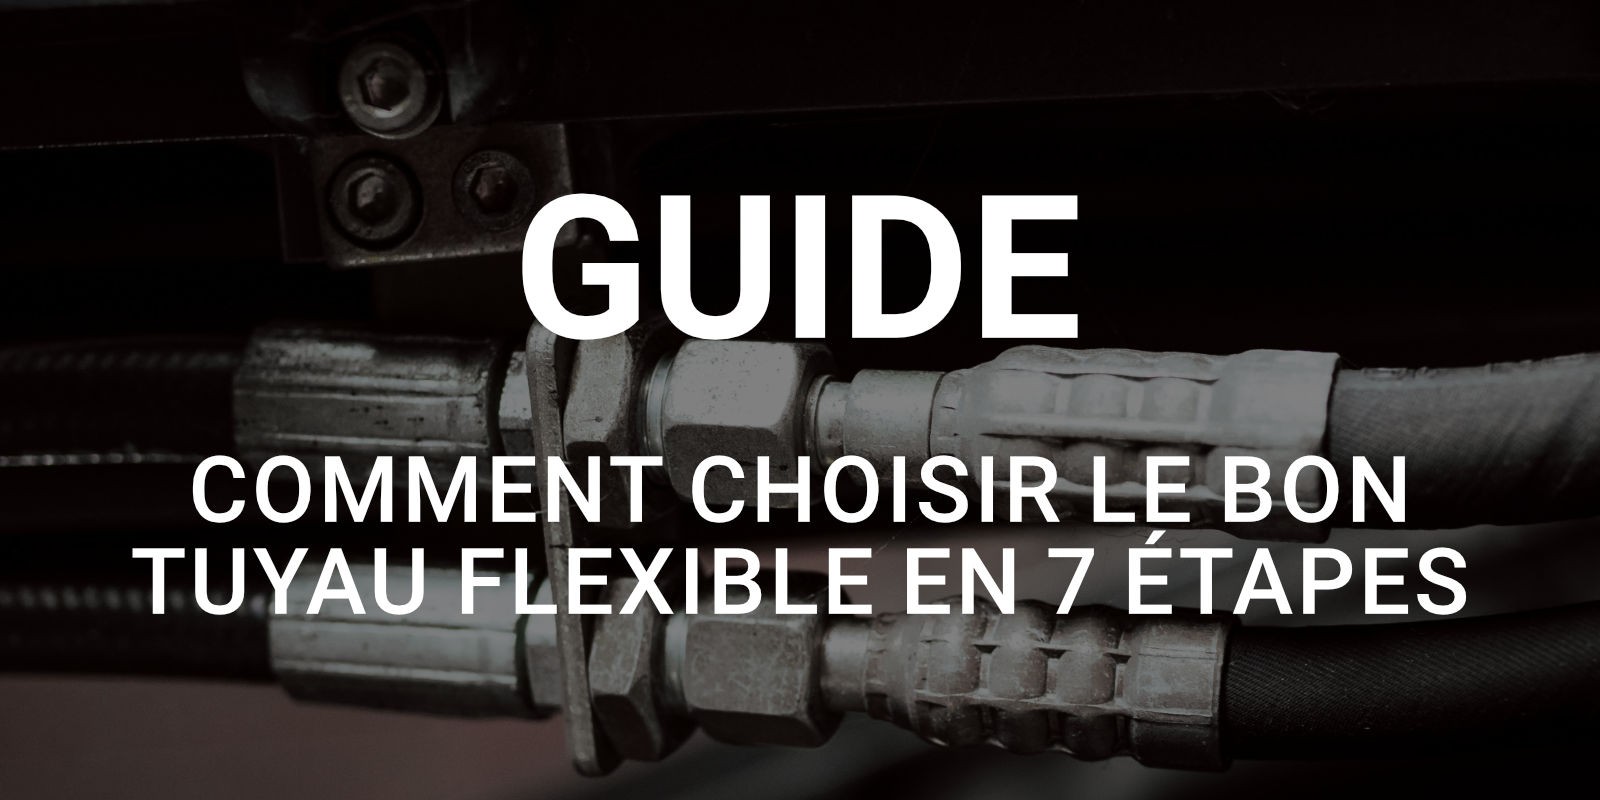 Comment choisir le bon tuyau flexible en 7 étapes